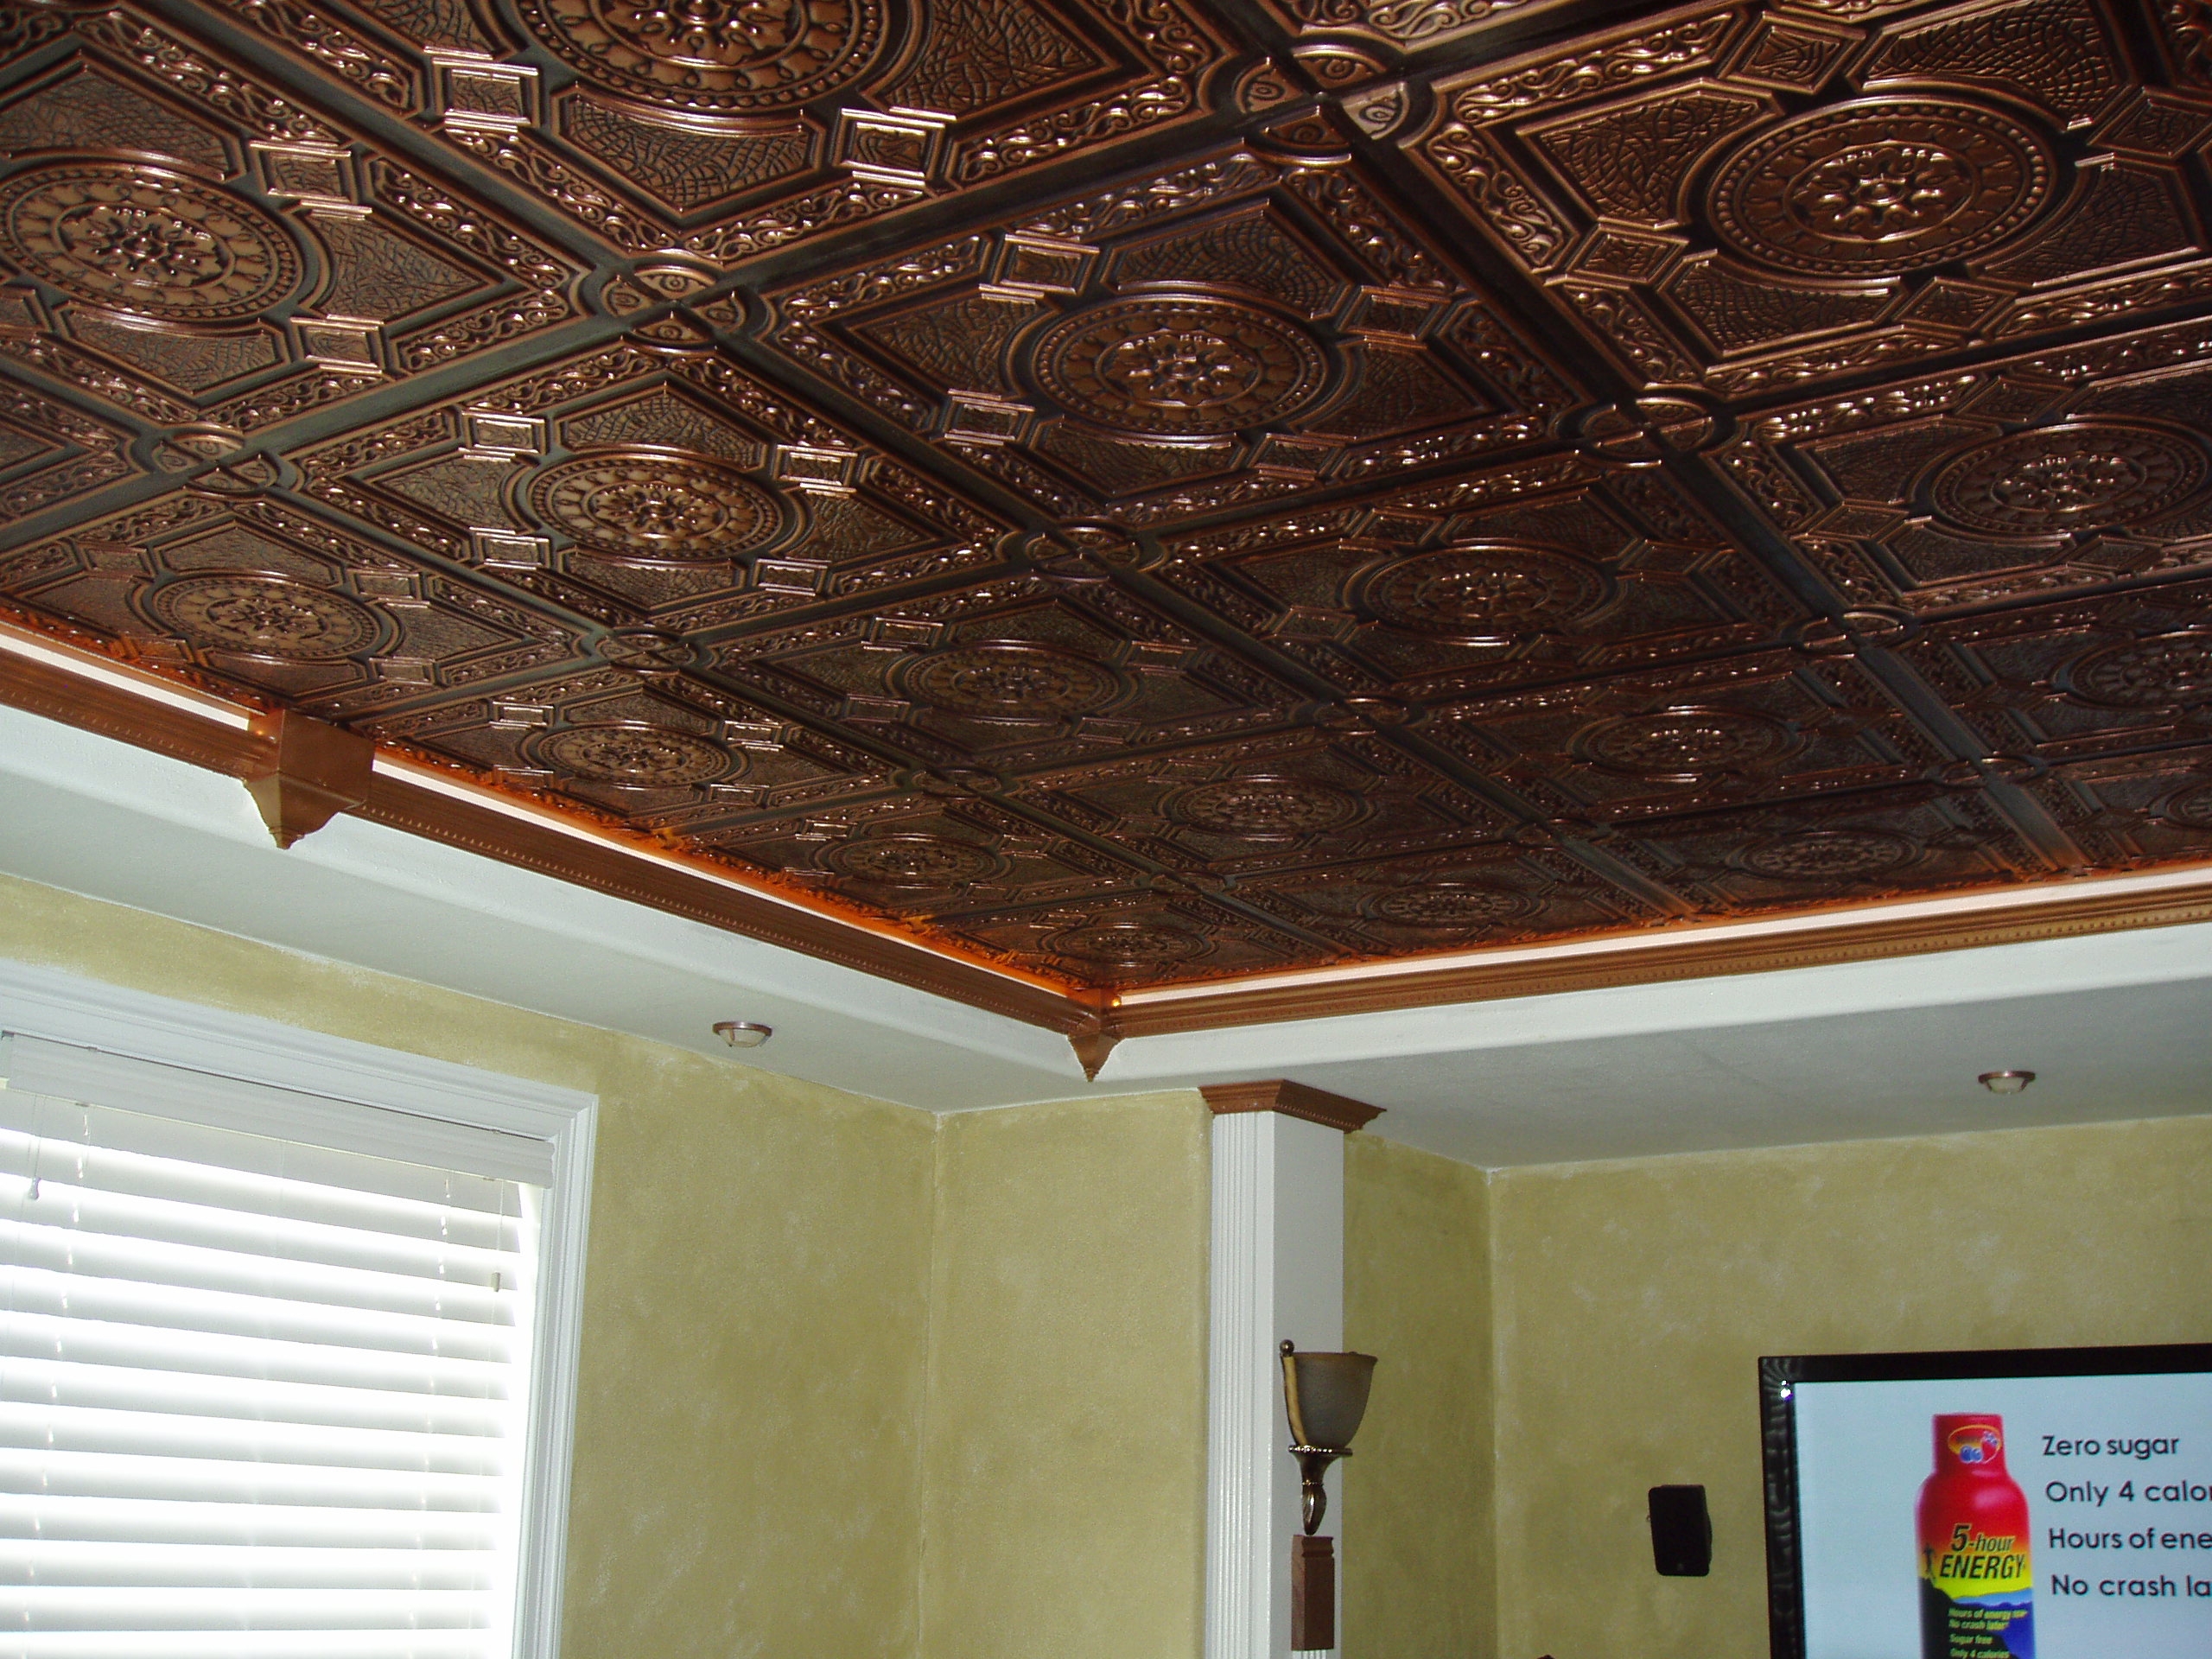 Faux Copper Plastic Ceiling Tiles Faux Copper Plastic Ceiling Tiles drop down ceiling tiles copper ceiling tiles for spacious look 2560 X 1920